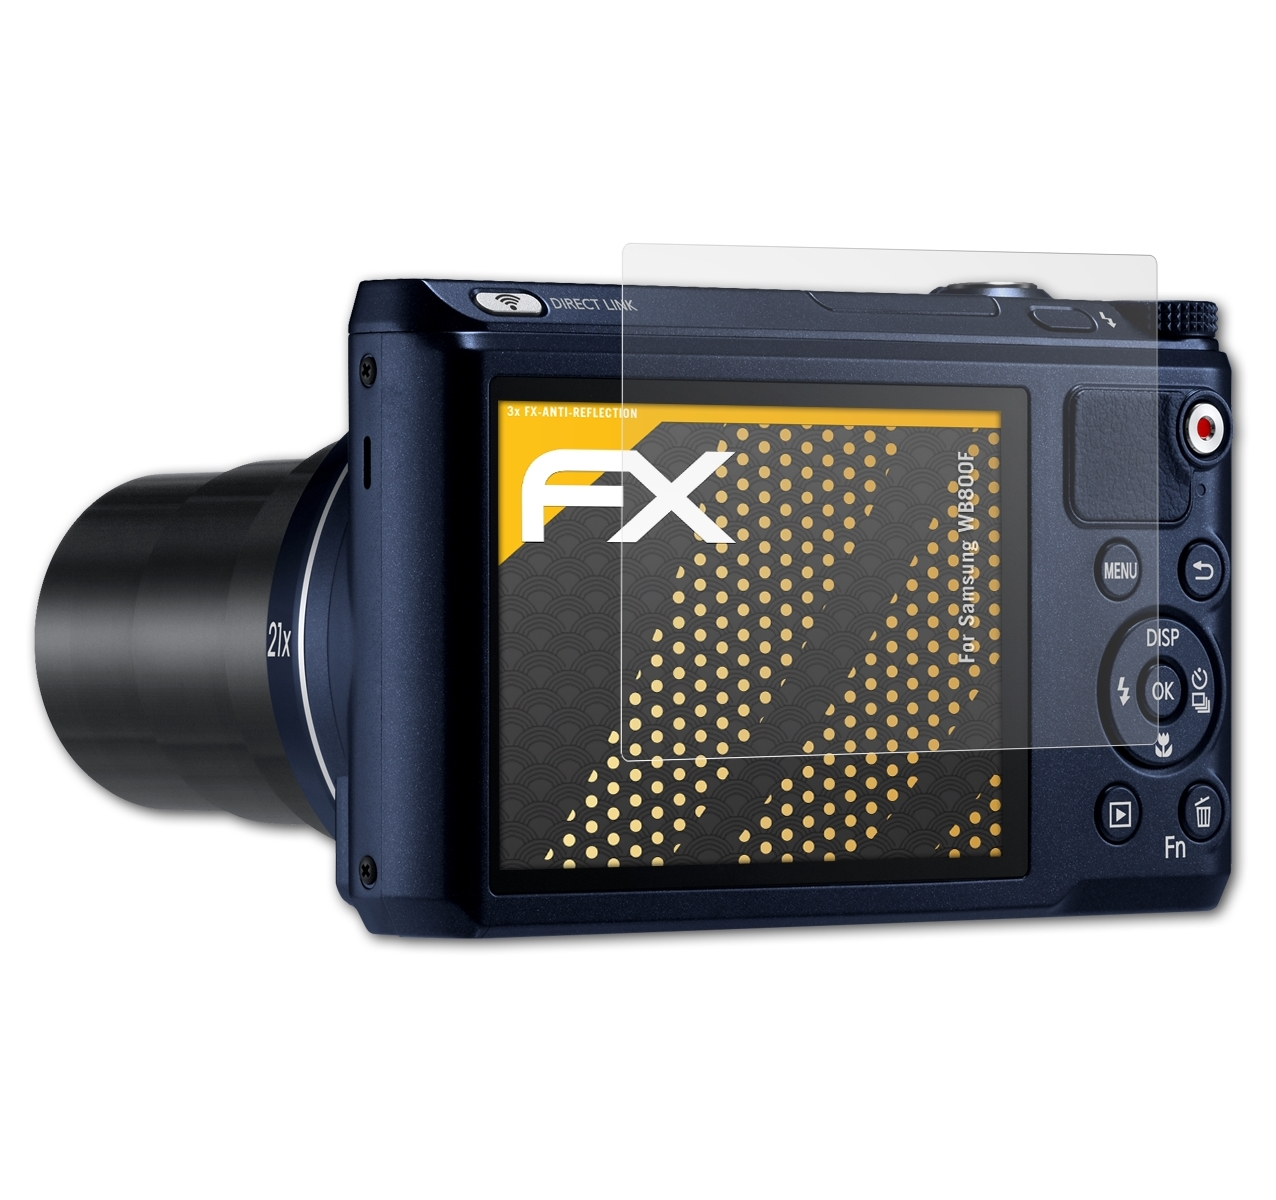 Displayschutz(für WB800F) FX-Antireflex 3x ATFOLIX Samsung